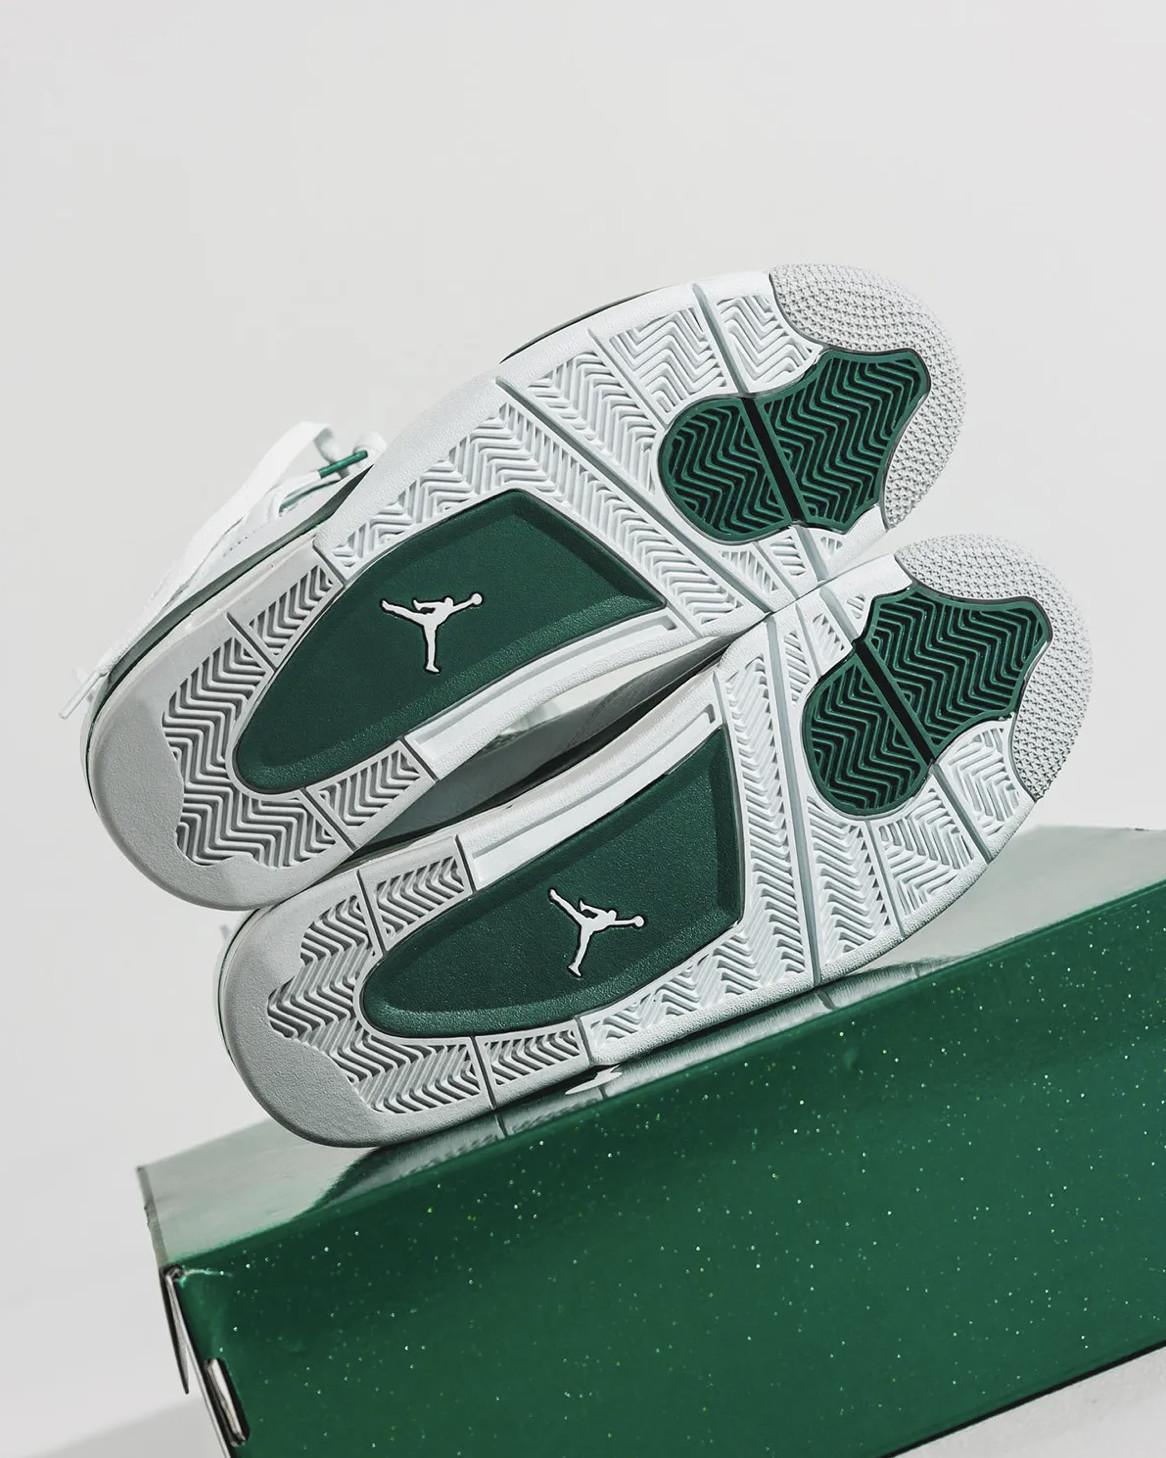 Le « vert oxydé » poursuit la domination de l'Air Jordan 4s